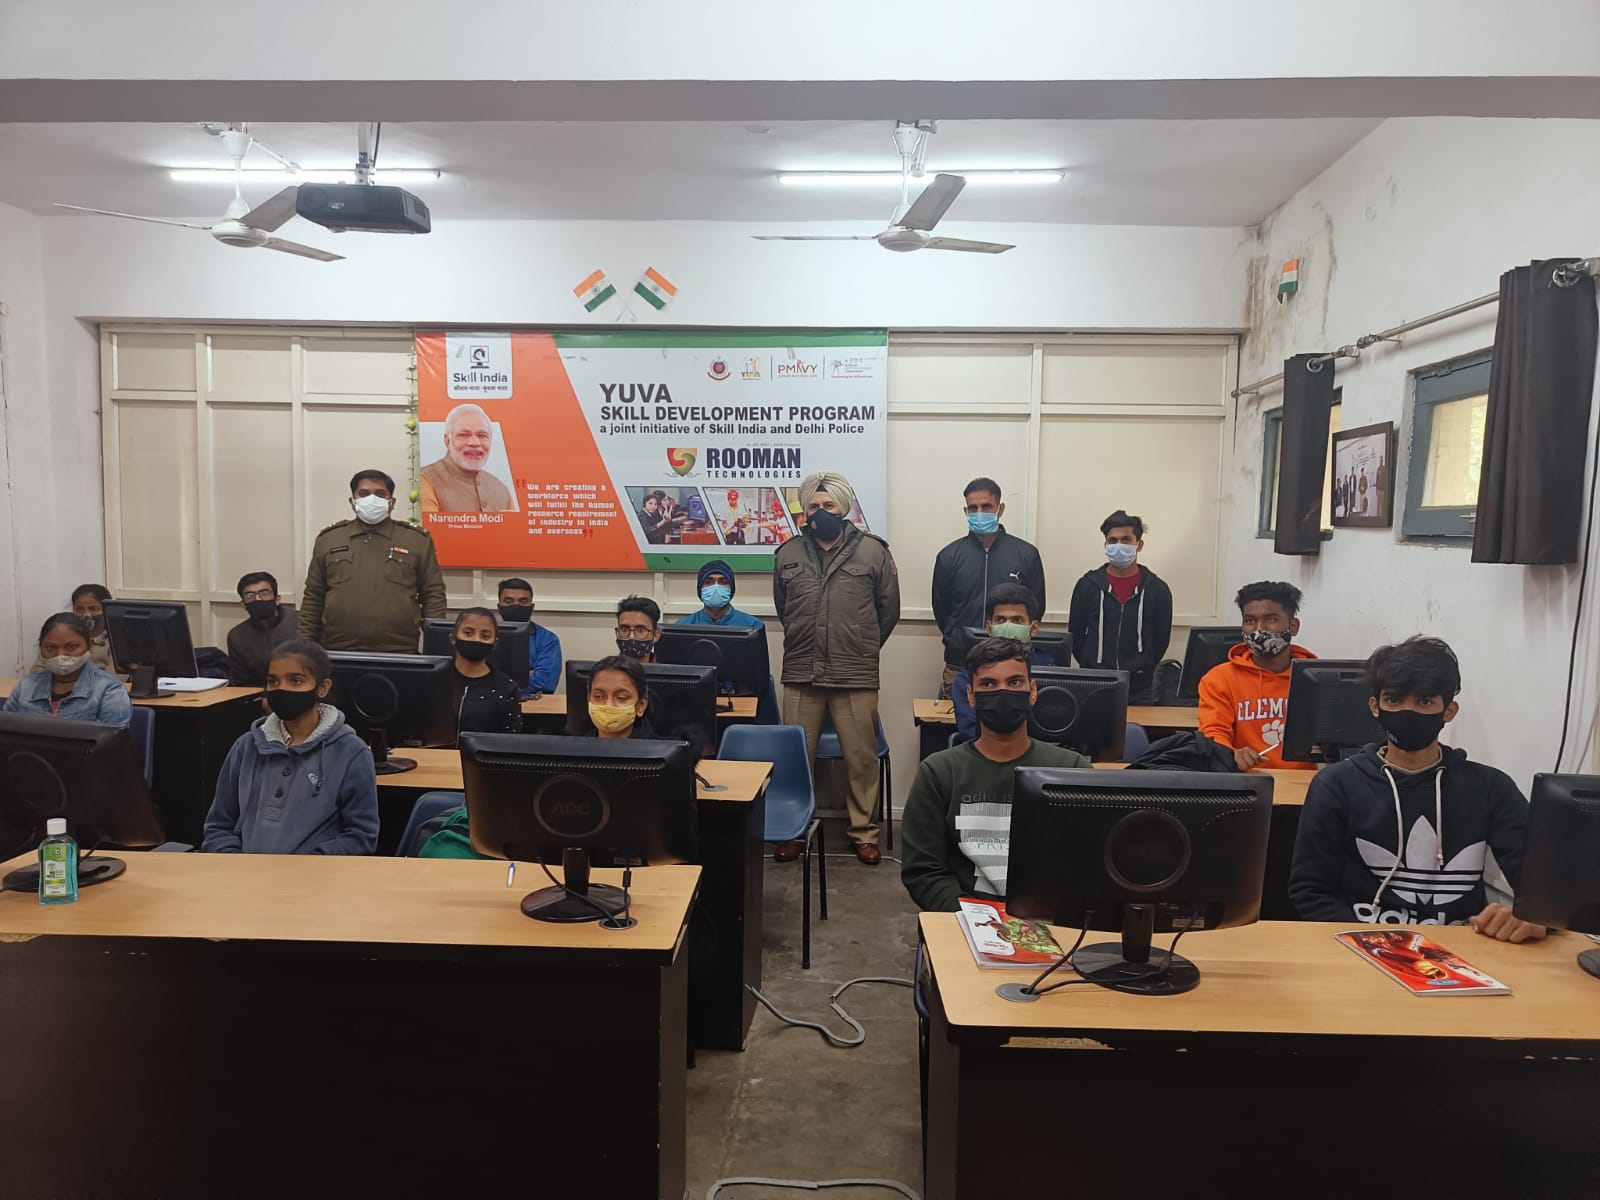 राष्ट्रीय युवा दिवस के अवसर पर उत्तरी जिला दिल्ली पुलिस ने शुरू किया मुफ्त कंप्यूटर एवं हार्डवेयर कोर्स